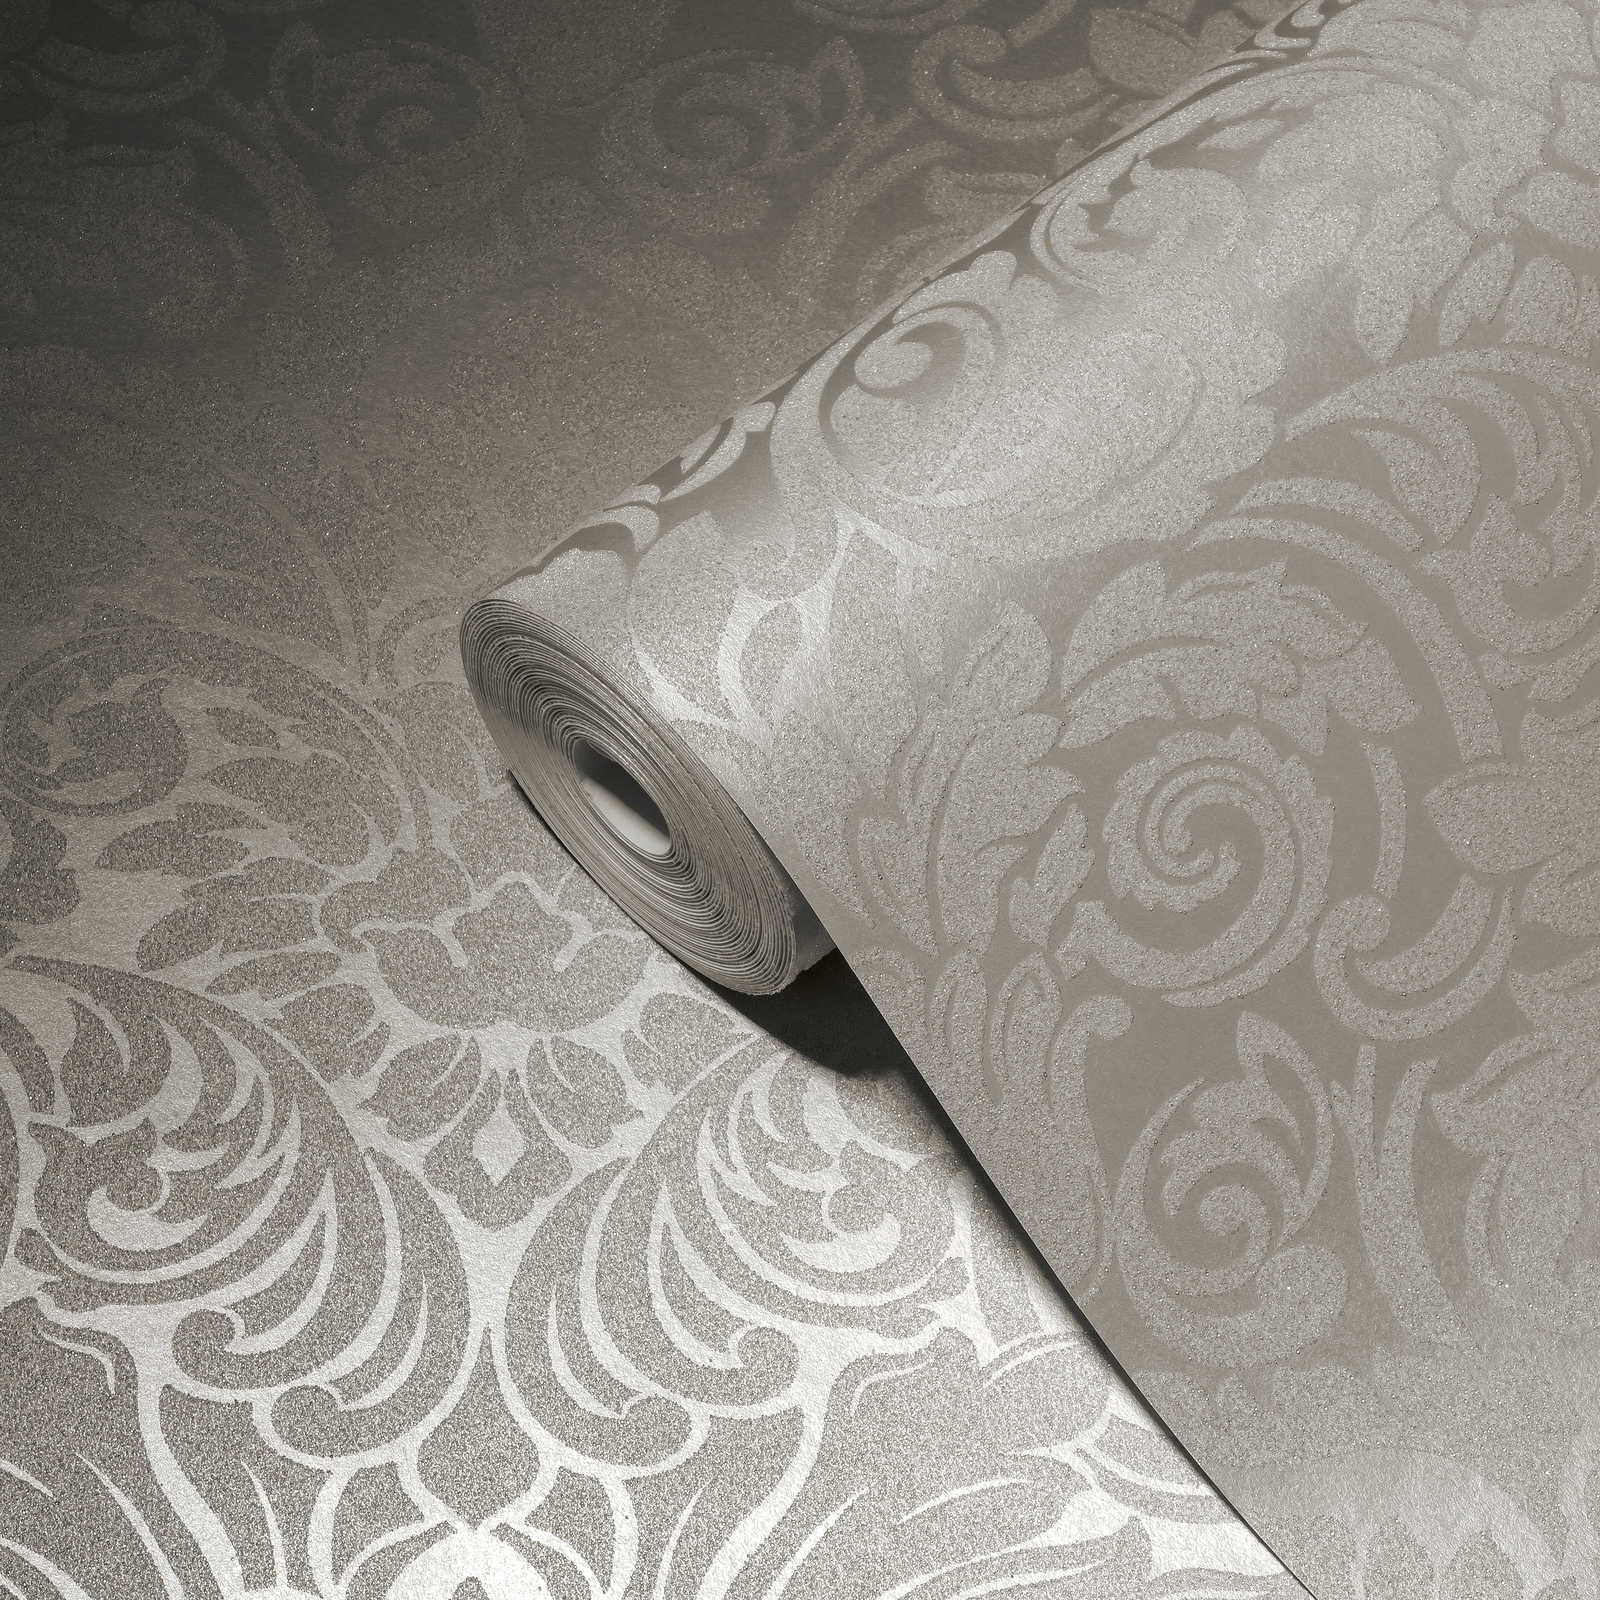             Papel pintado ornamental con efecto metálico y diseño floral - plata, crema
        